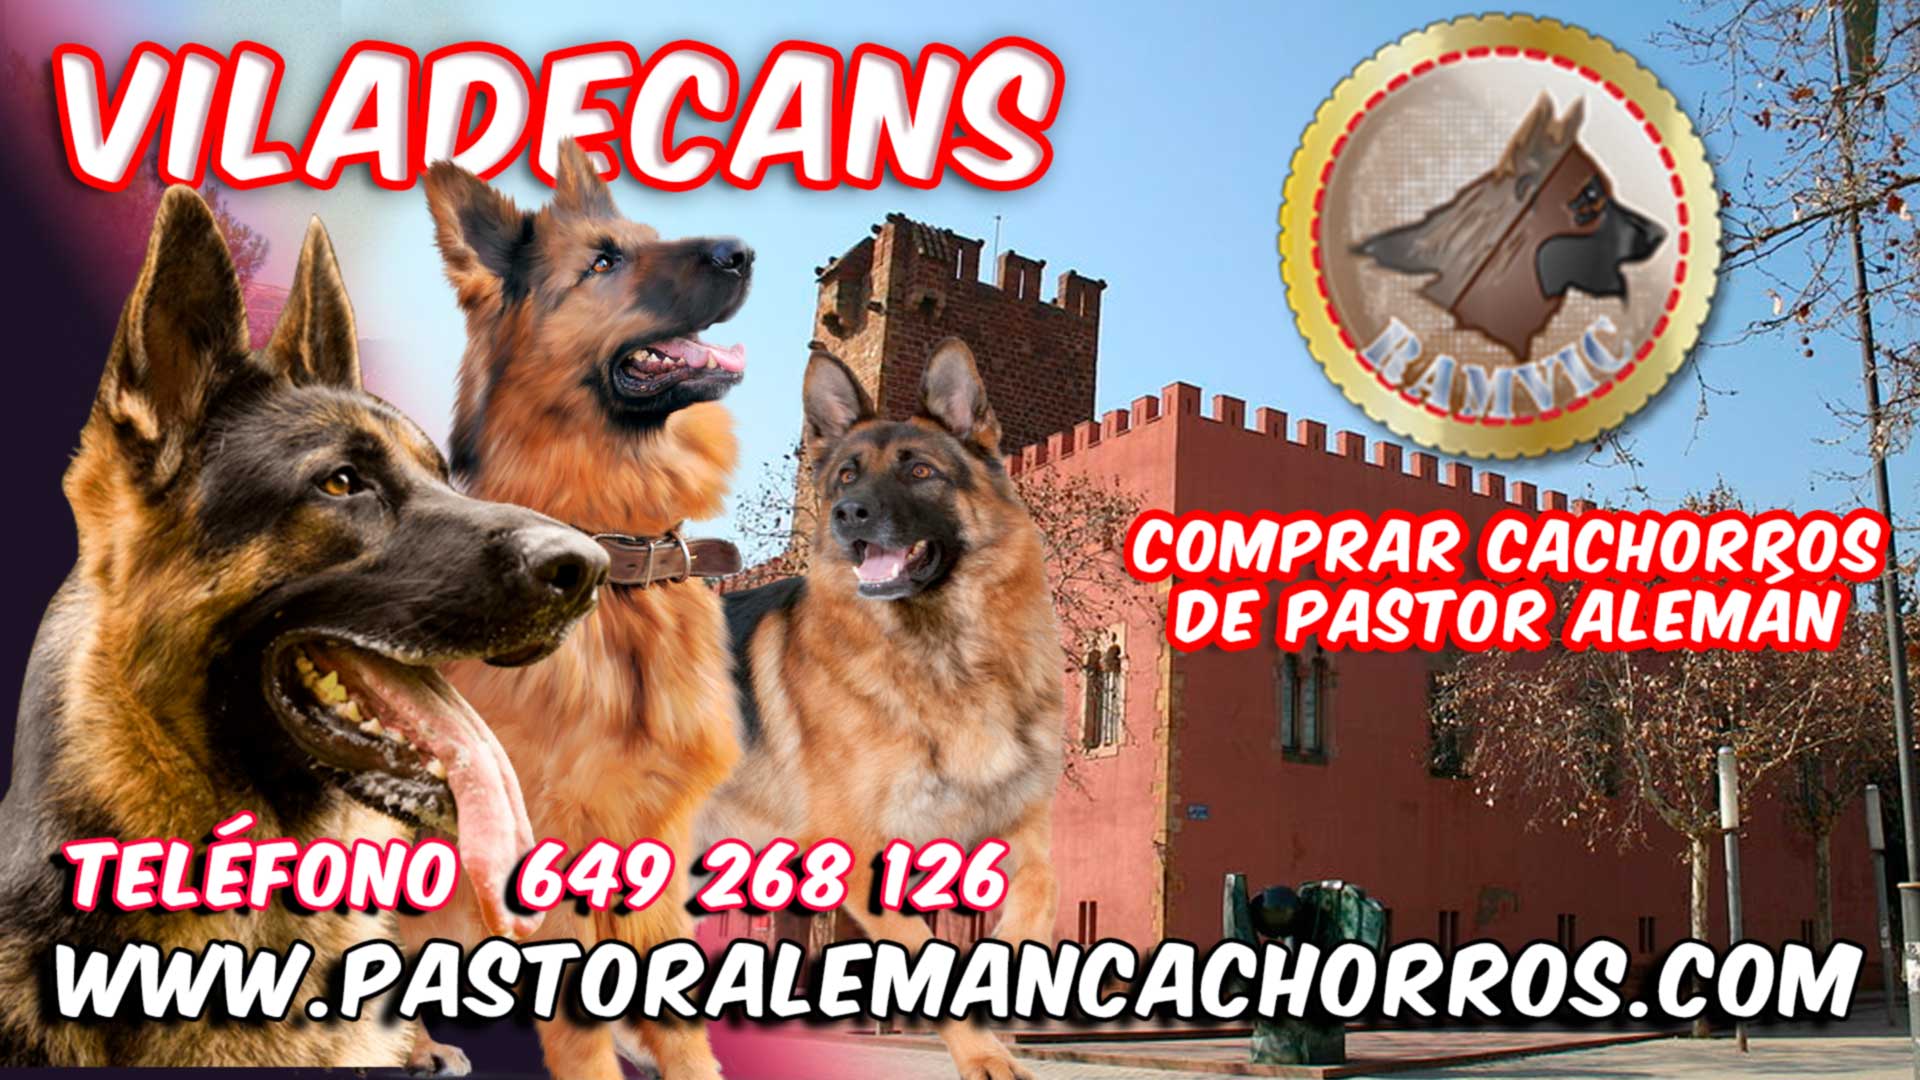 Comprar cachorros de Pastor Alemán en Viladecans